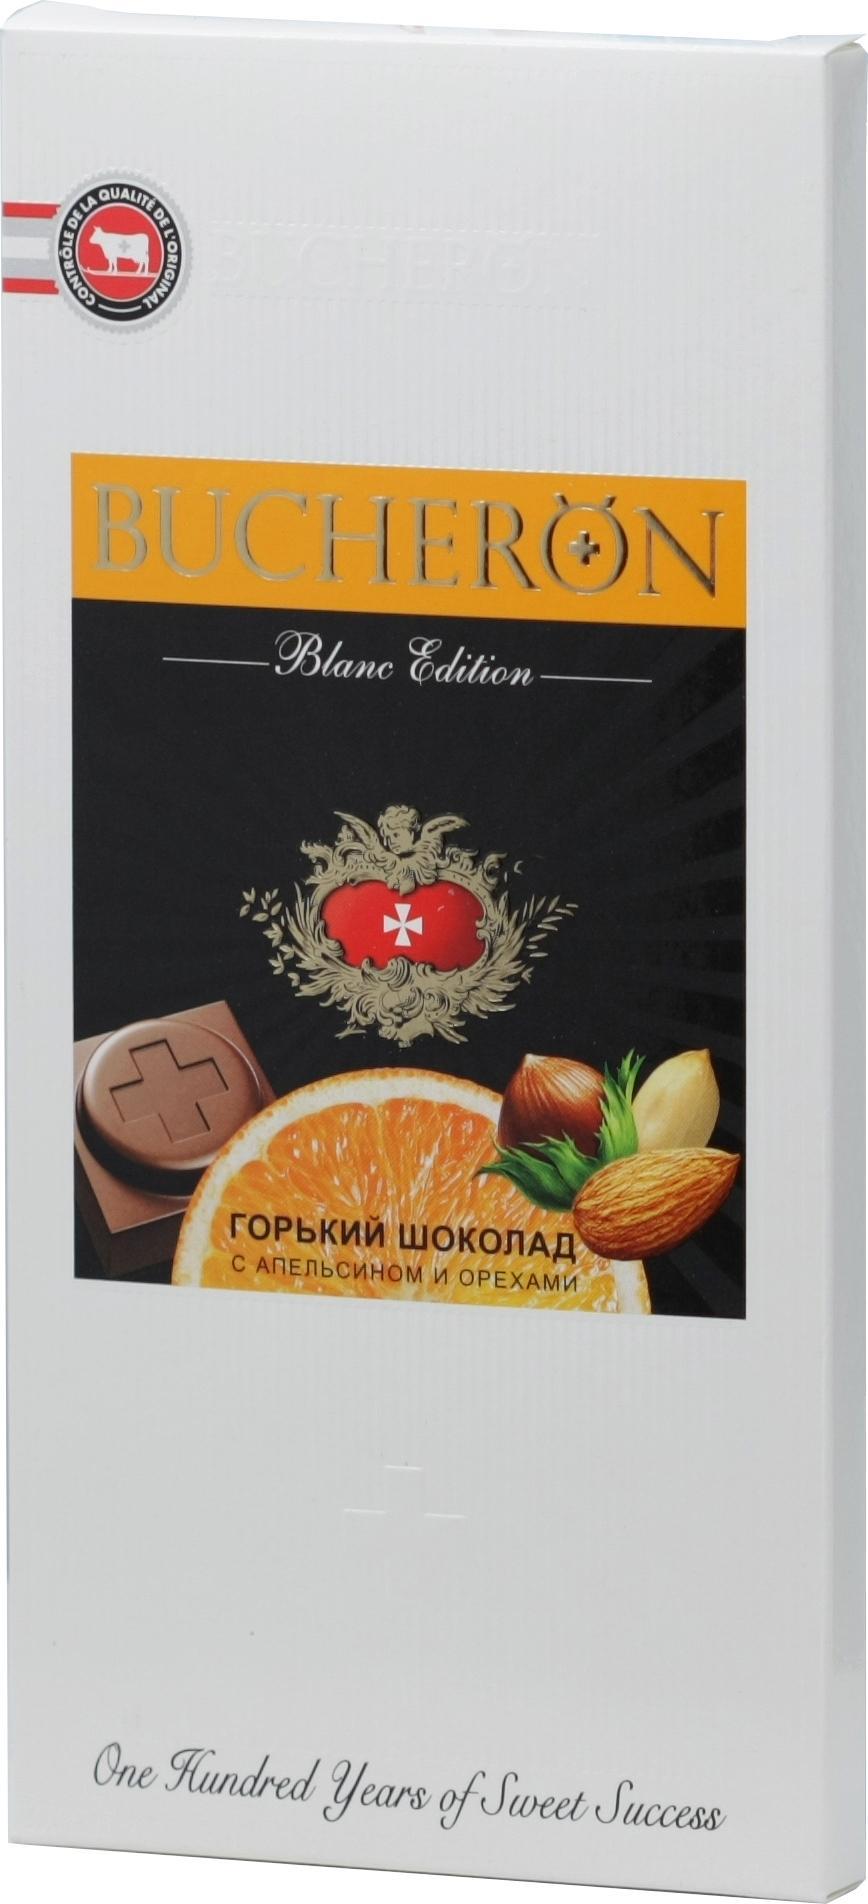 Шоколад Bucheron Blanc Edition горький с апельсином и орехами 85 гр., картон